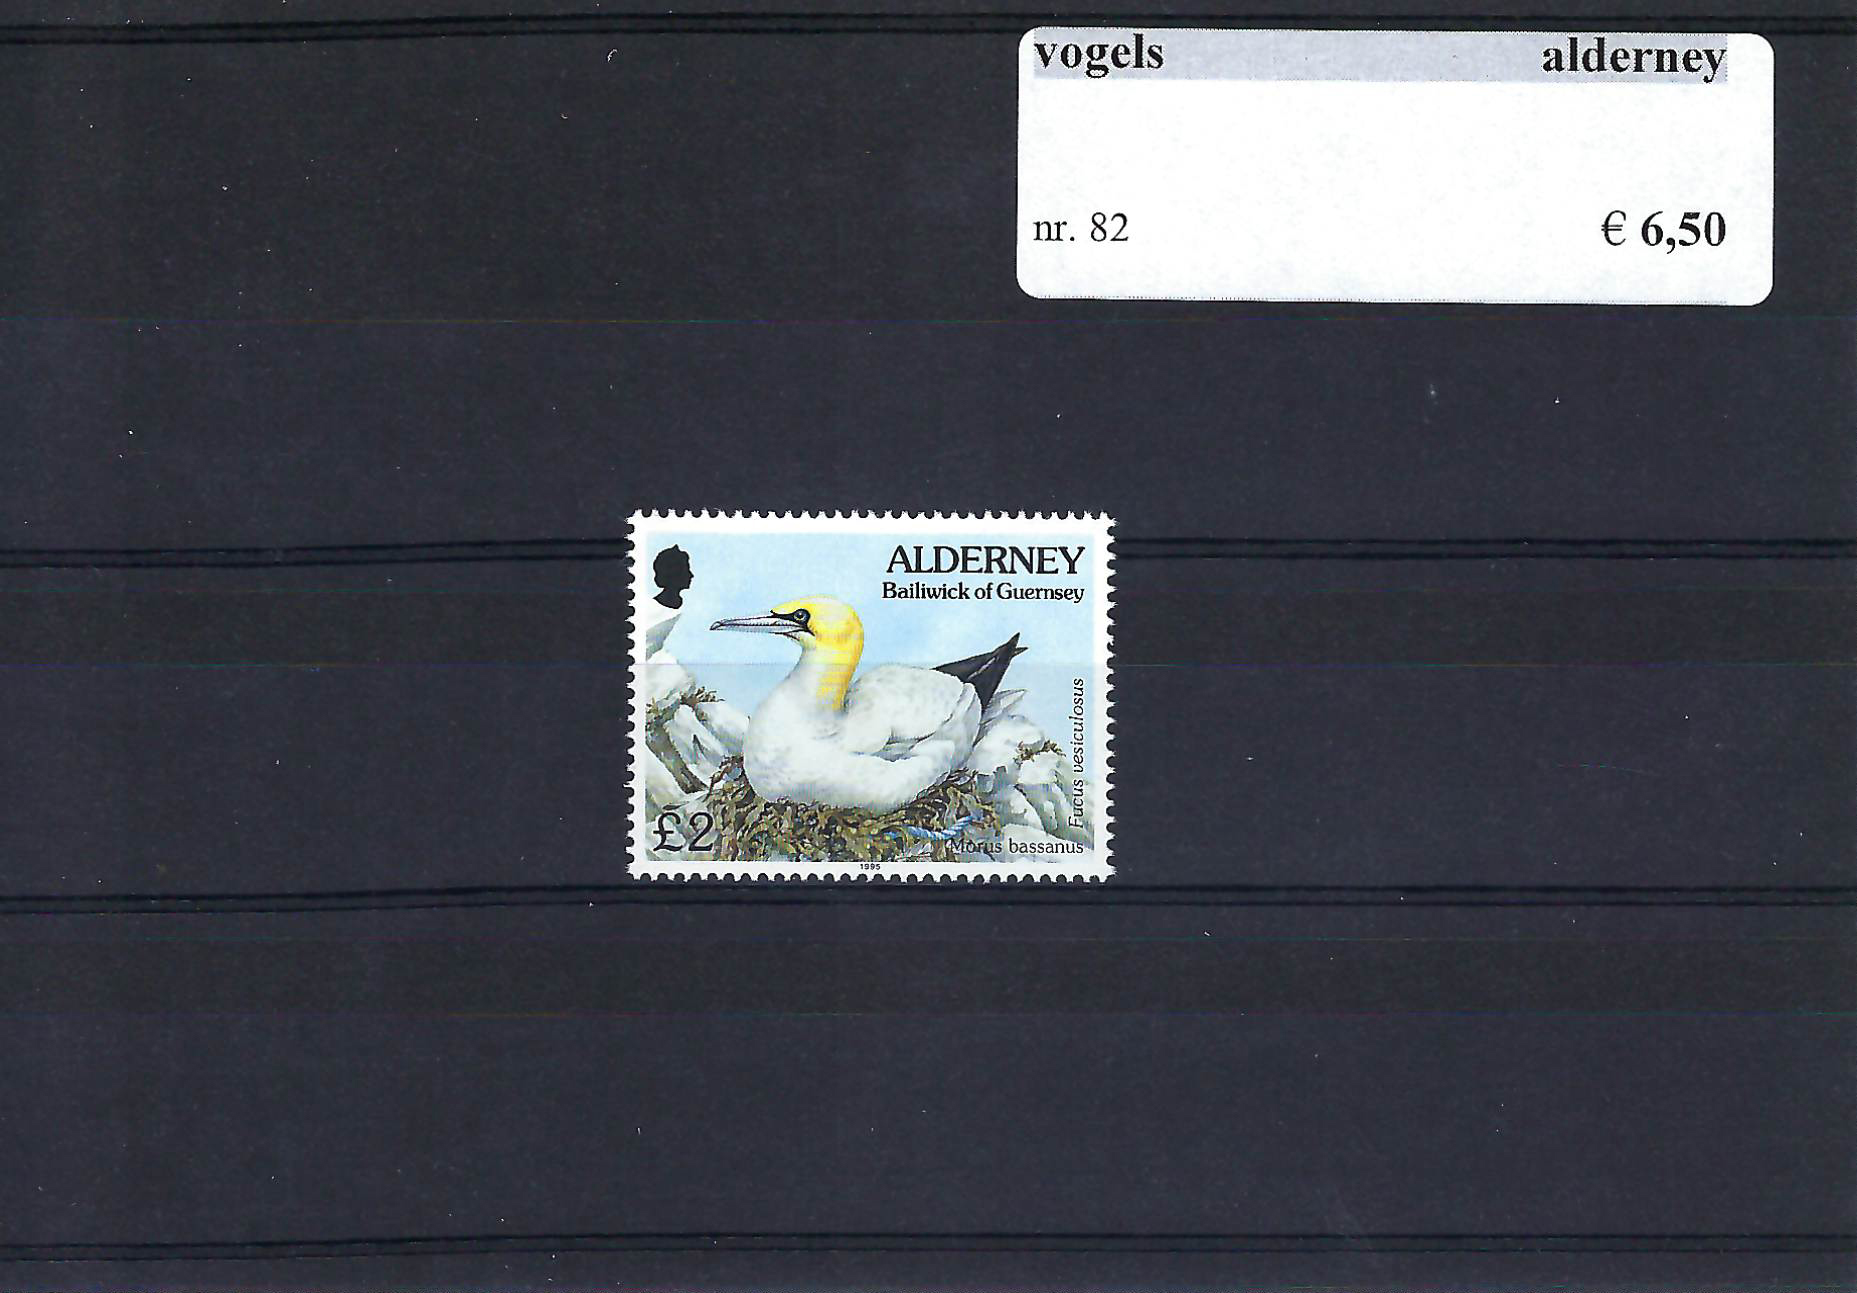 Themazegels Vogels Alderney nr. 82